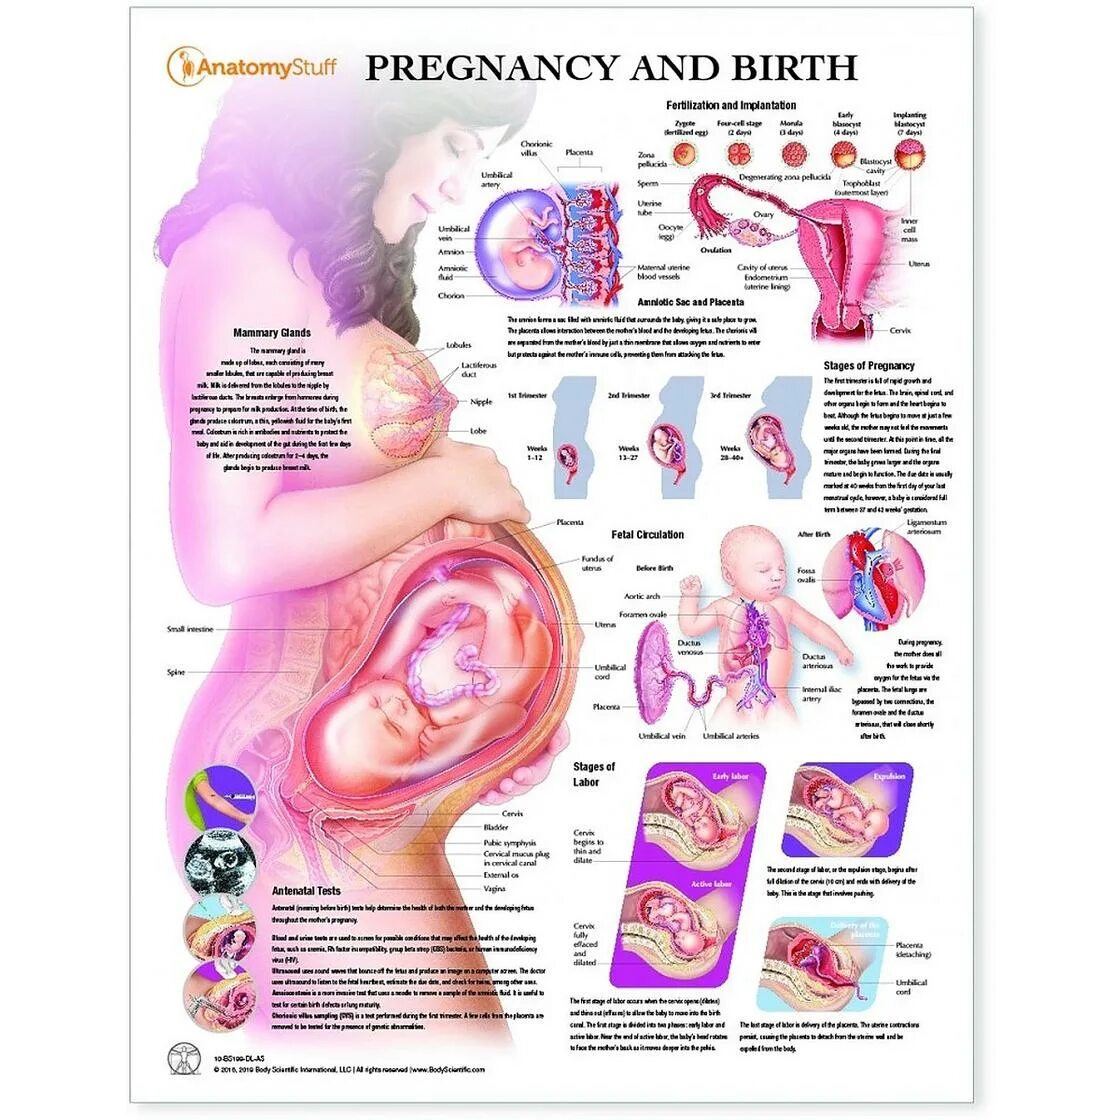 34 беременности что происходит с малышом. Положение ребенка в животе на 33 неделе беременности. Плод в животе матери схема. Положение органов на 32 неделе беременности. Эмбрион 34 недели беременности вес плода.